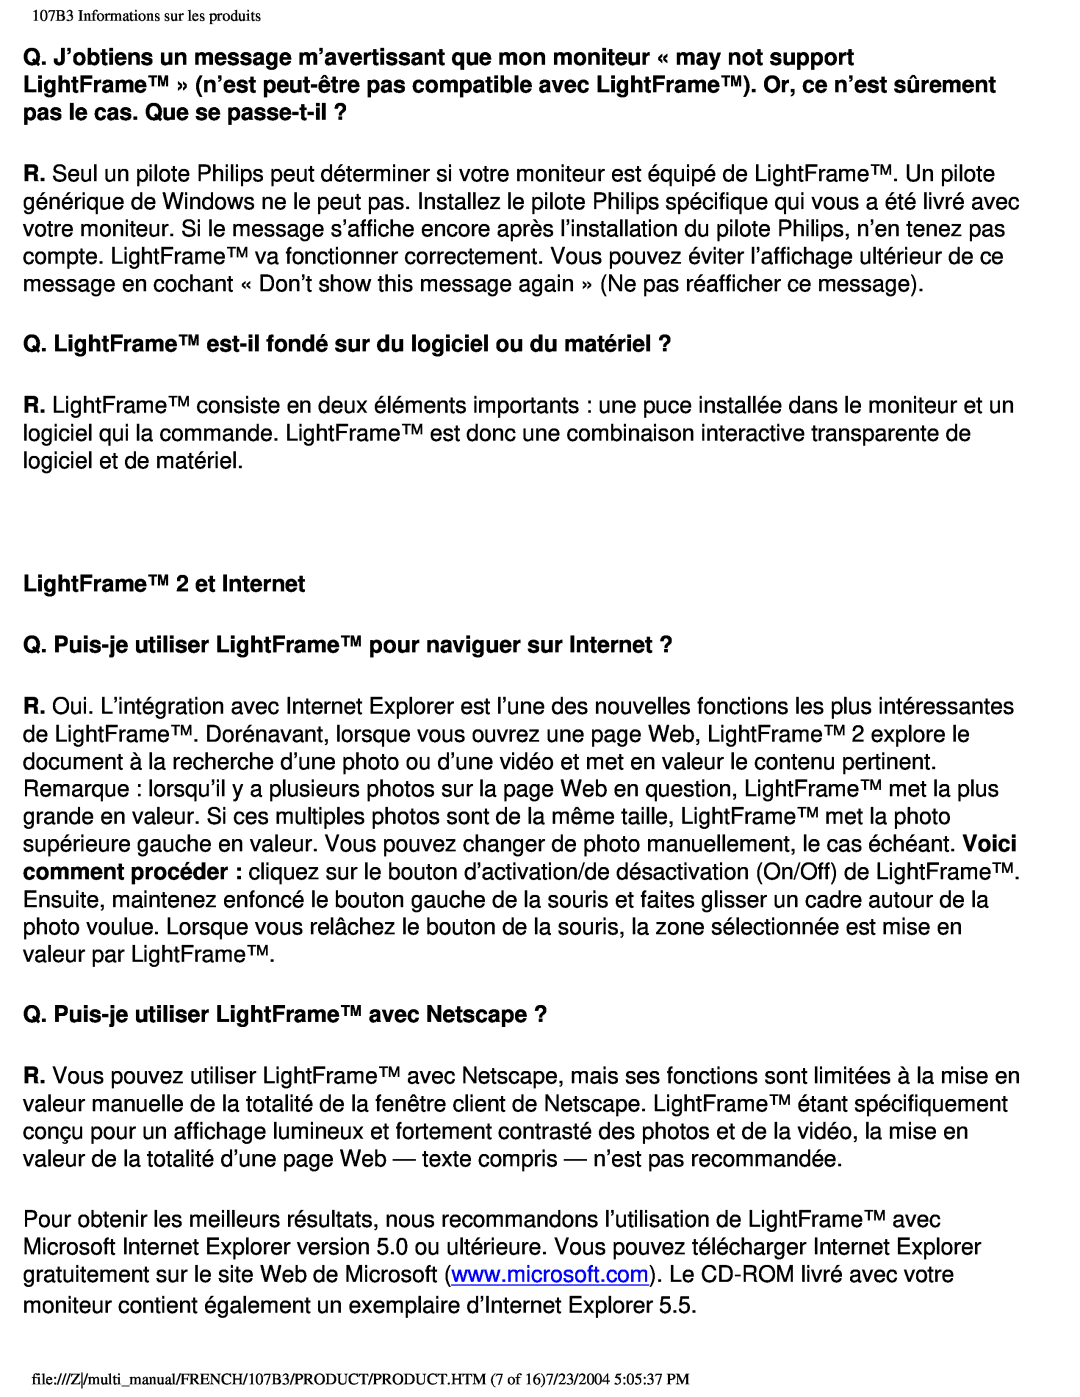 Philips 107B3 user manual LightFrame 2 et Internet 